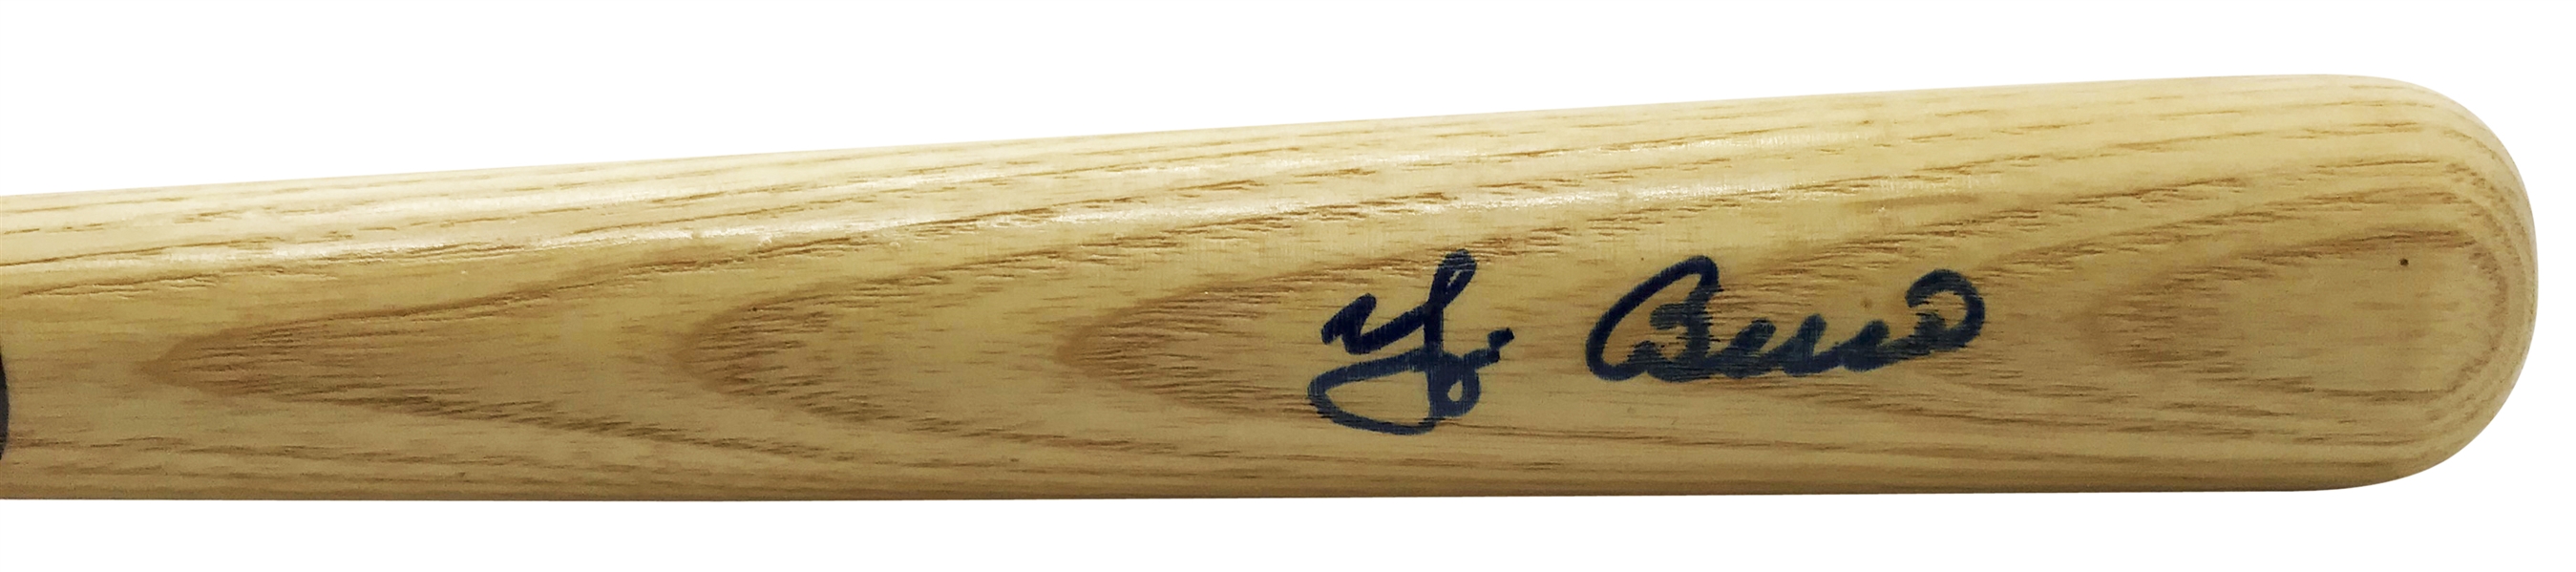 Yogi Berra Signed Mini Baseball Bat (Beckett/BAS Guaranteed)